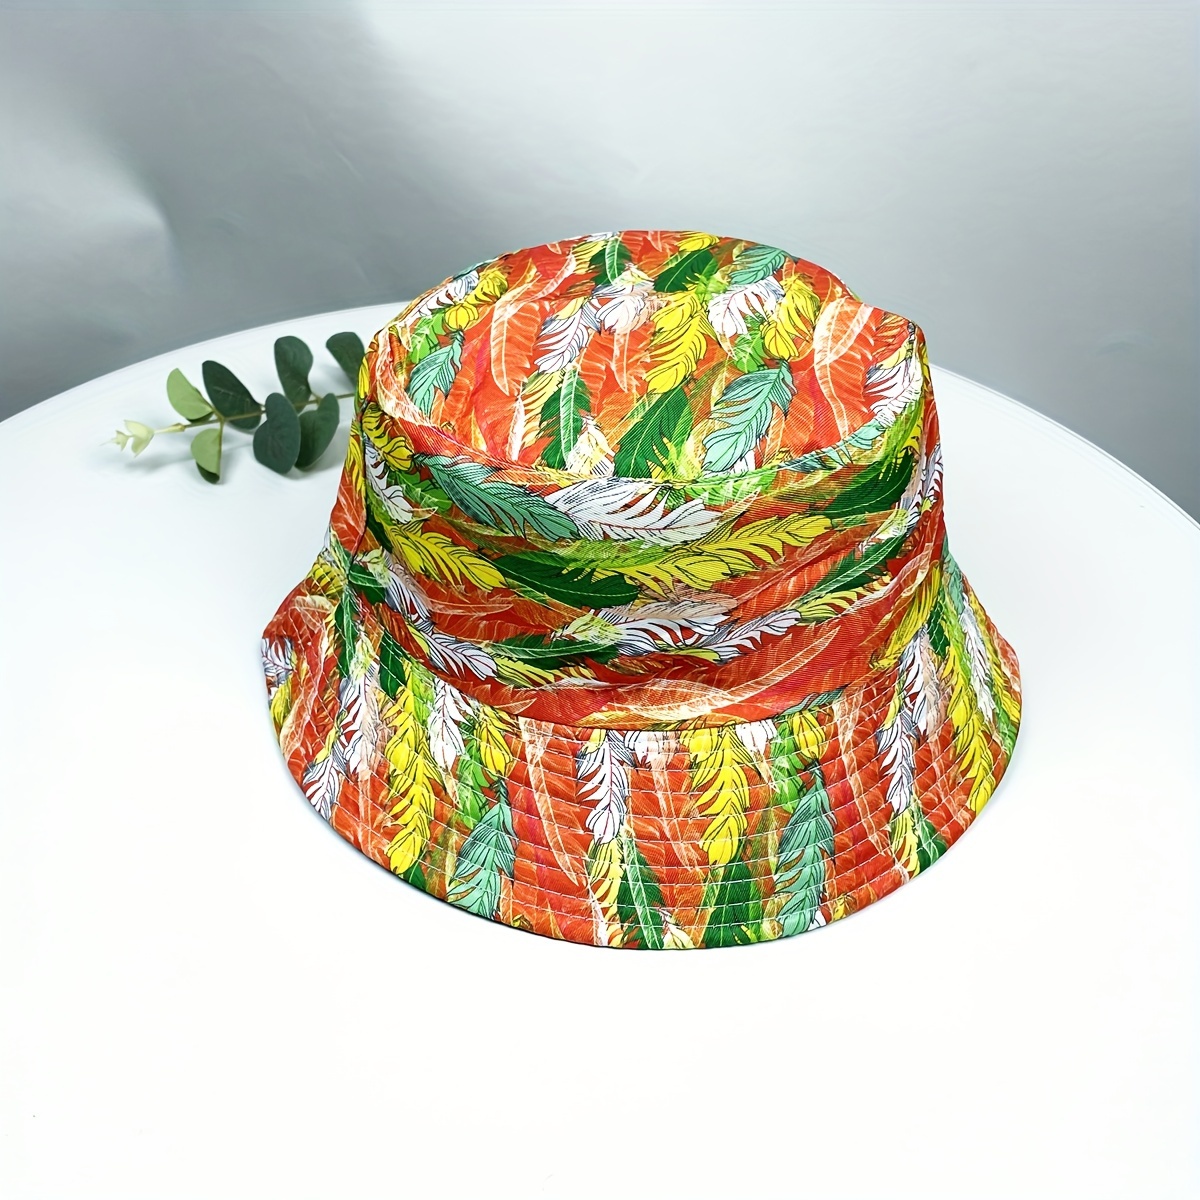 Sombrero Para El Sol Hombre Tie Dye Graffiti Moda Cubo Sombrero Cuenca  Sombrero Simple Sombrero, Compre Ahora Ofertas Por Tiempo Limitado